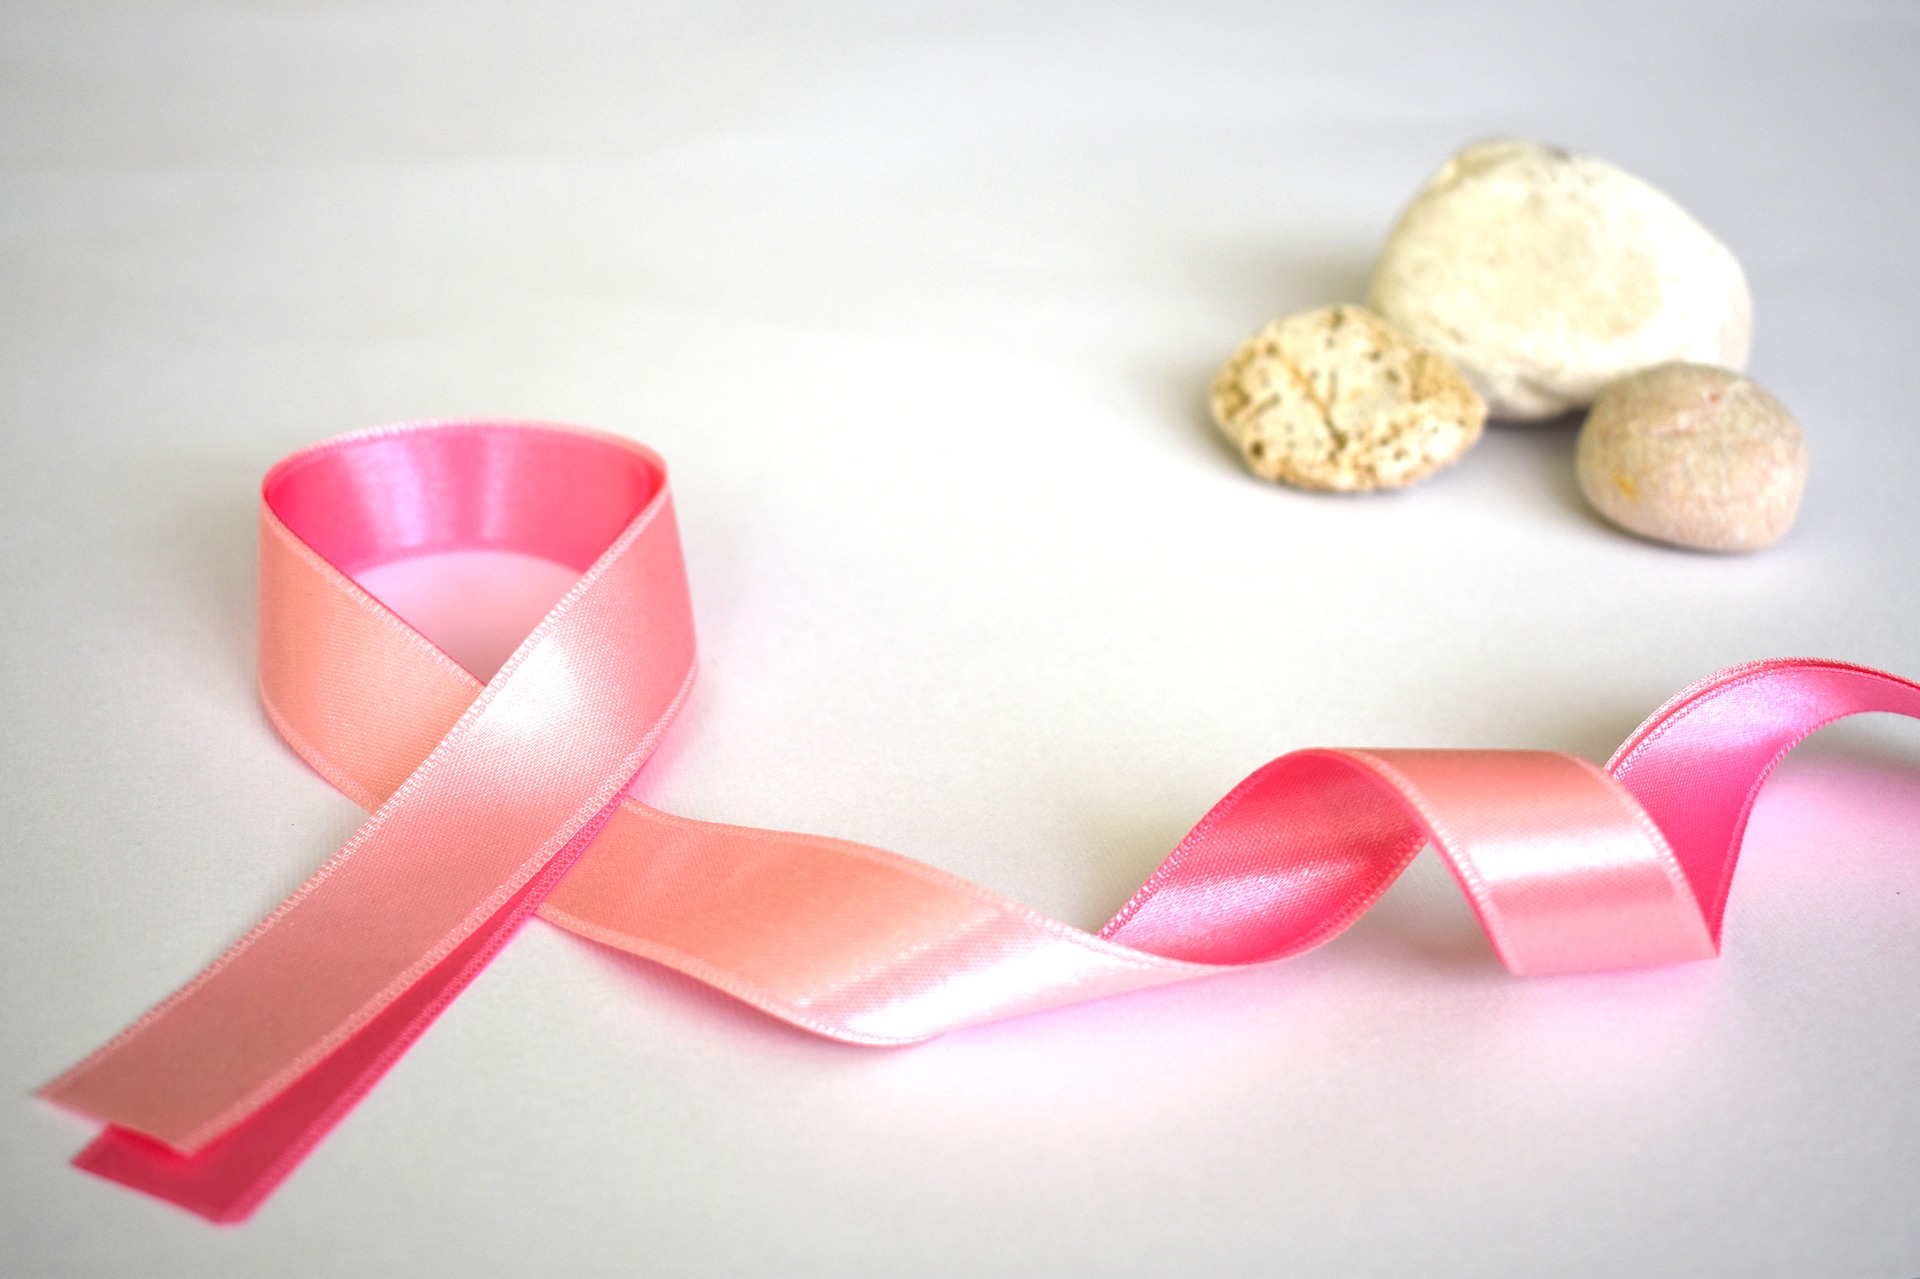 Bezpłatne badania mammograficzne w ramach programu profilaktyki raka piersi 2